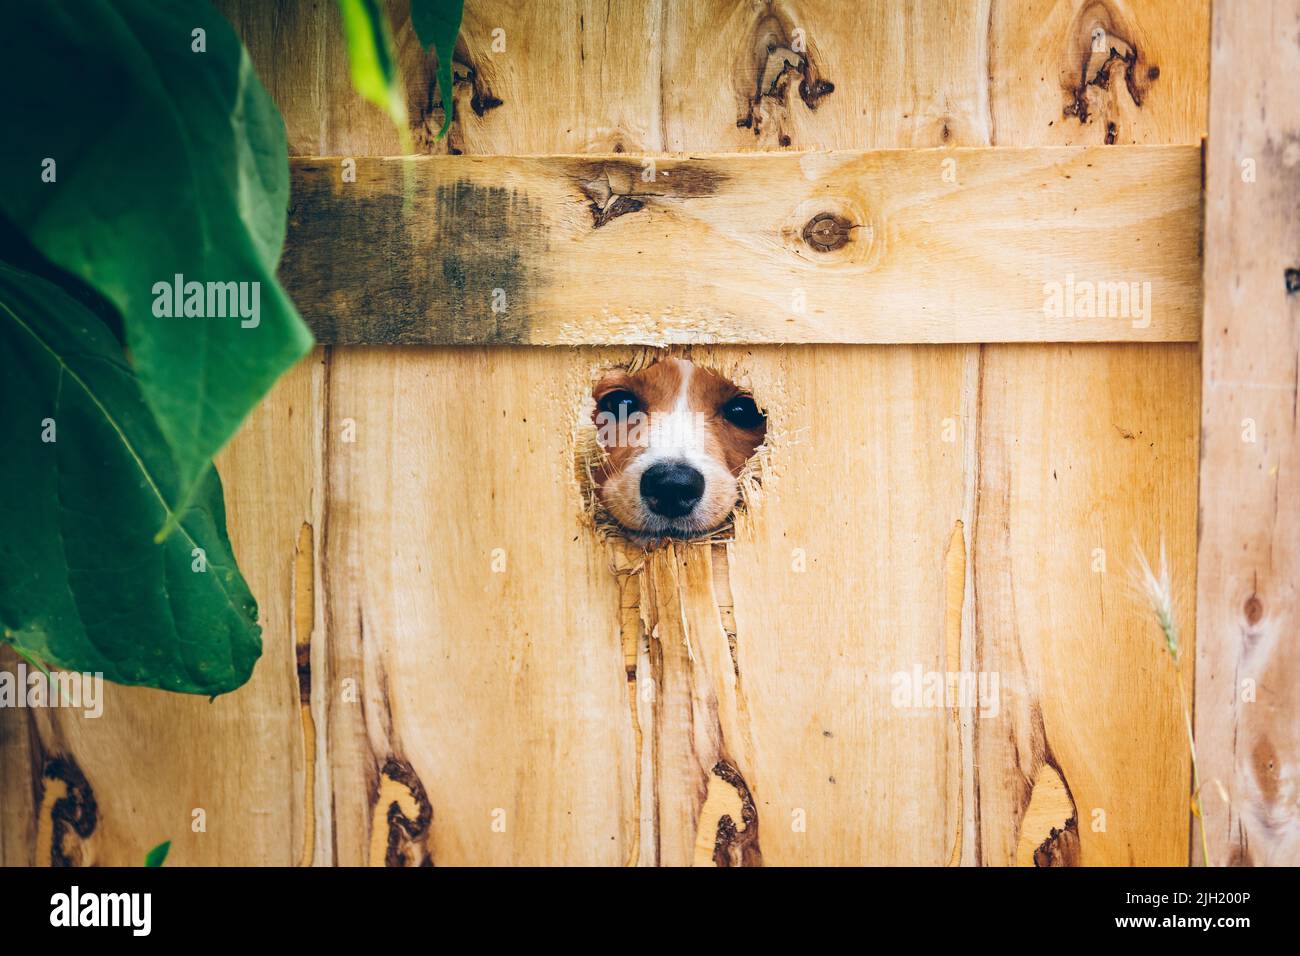 Der Hund nagte ein Loch in den Zaun, um herauszukommen. Ukrainische Freiwillige engagieren sich in der Rettung von Tieren in der Ukraine. Freiwillige helfen ukrainischen Haustieren. Stockfoto